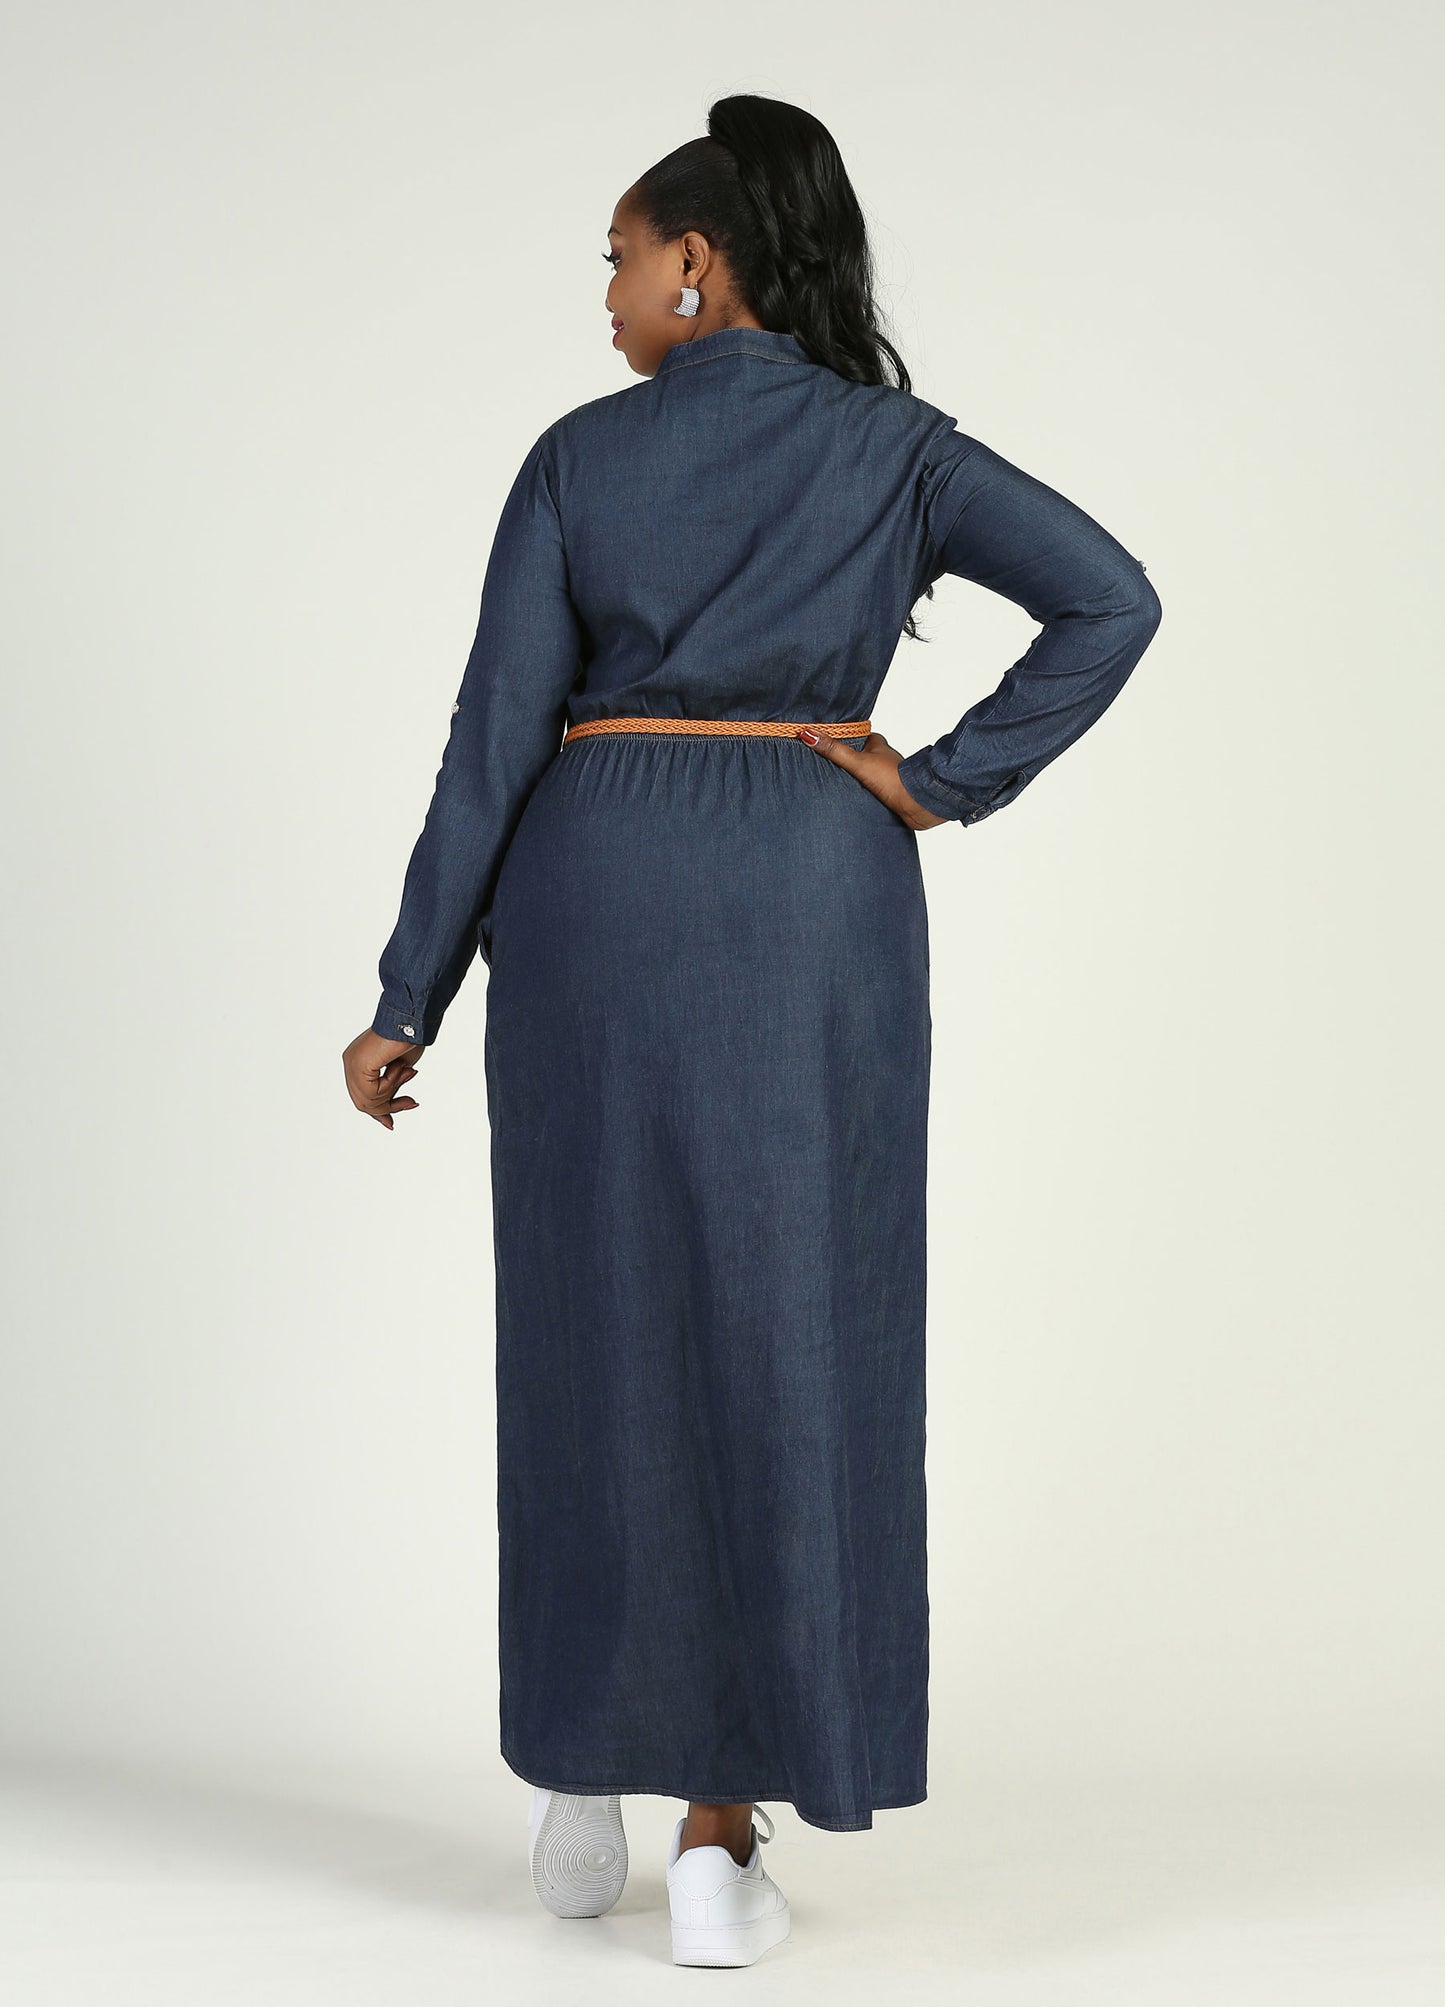 MECALA Women's Long Sleeve Denim Shirt Dress-Dark Blue back view